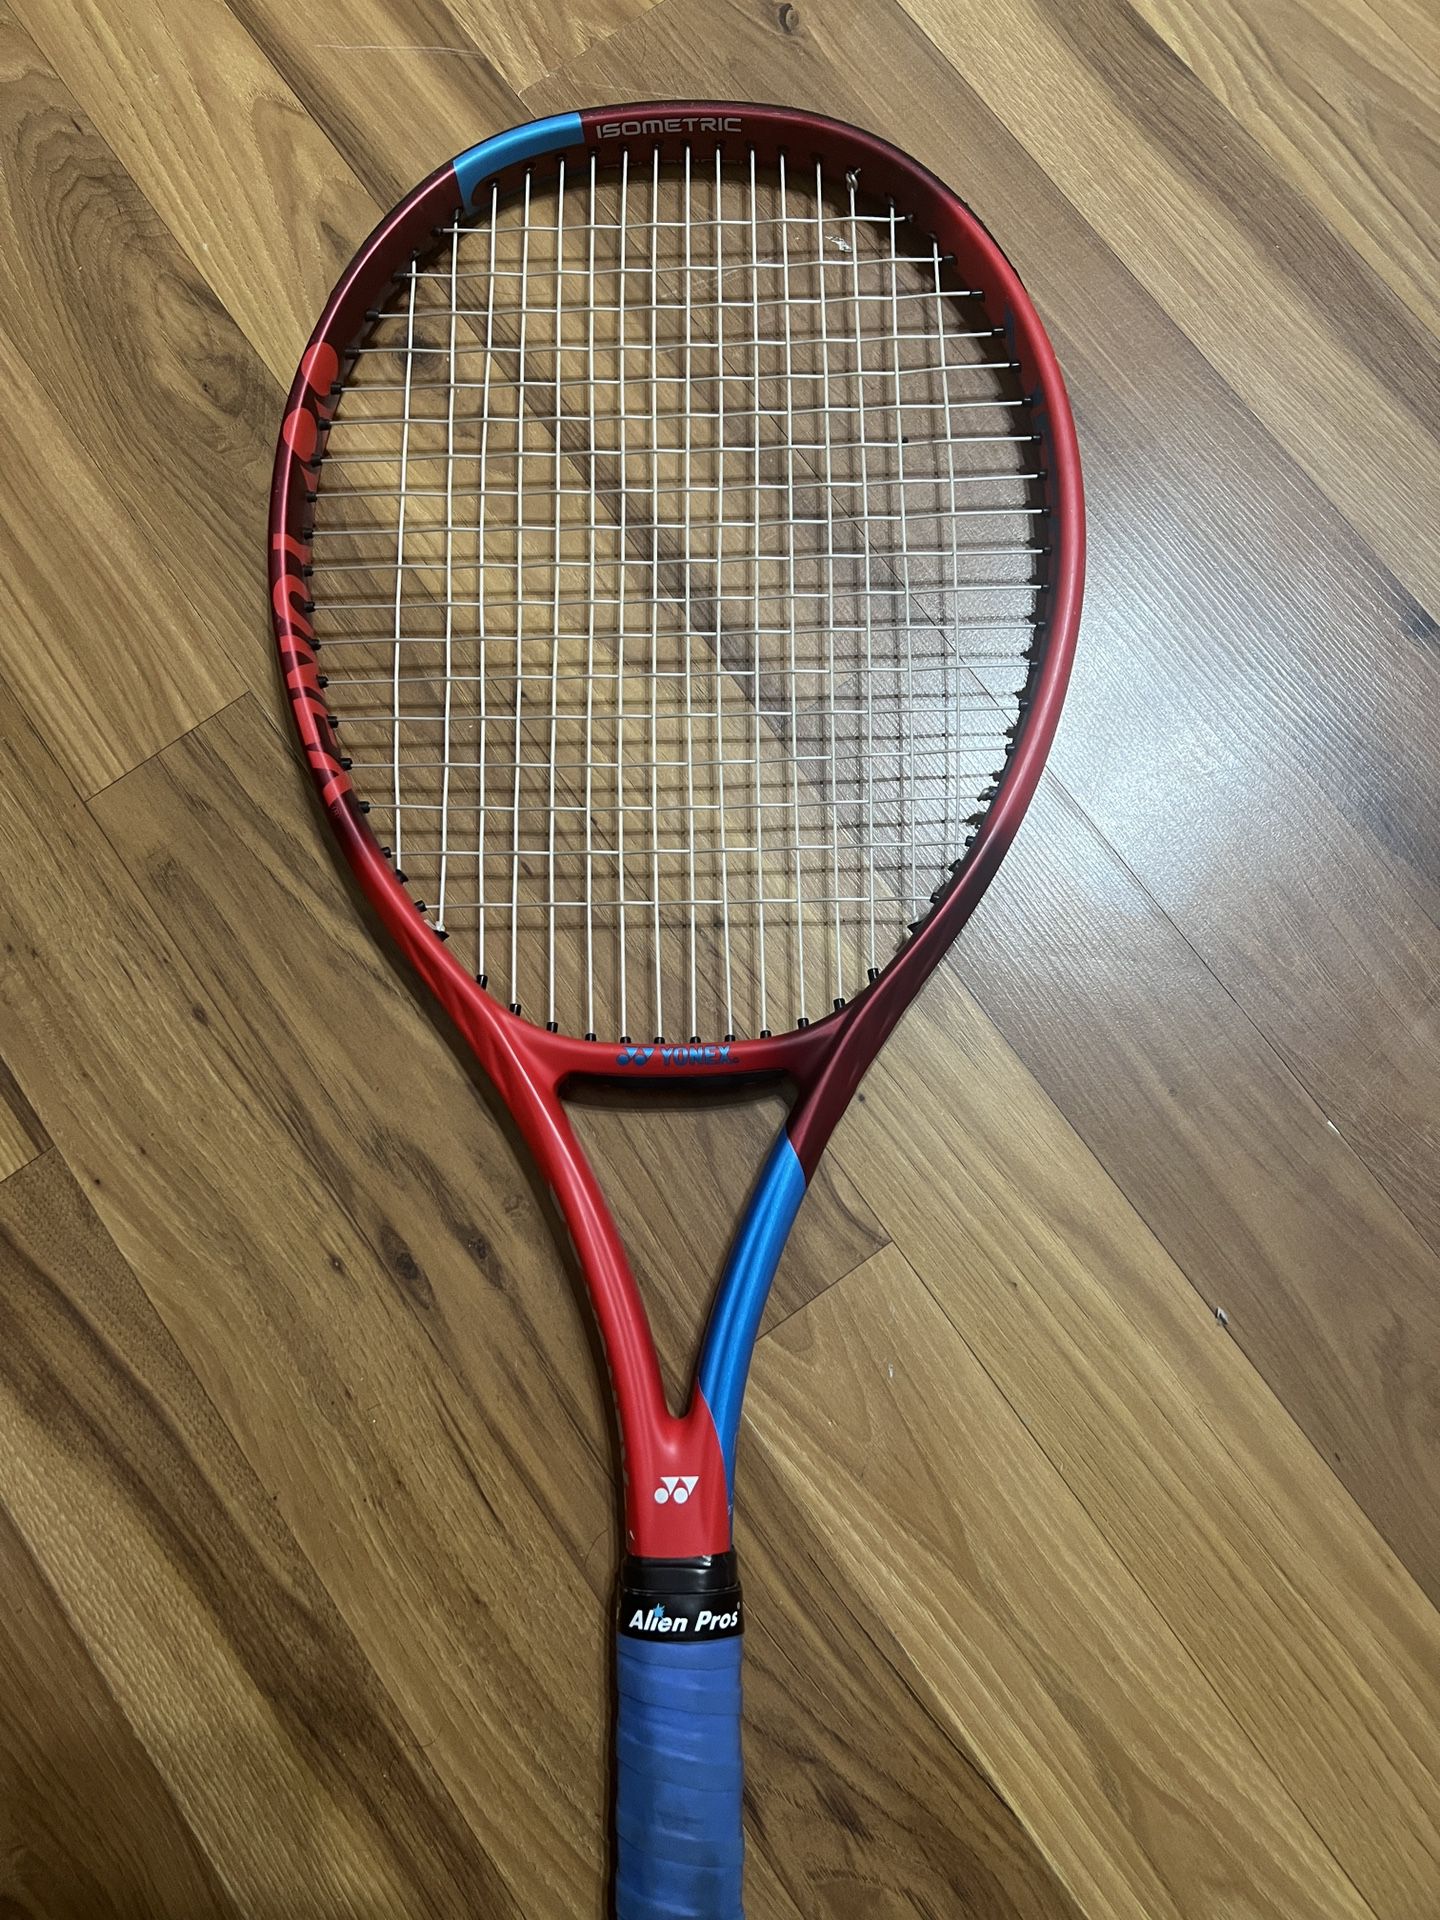 Tennis racket (VCORE Feel)